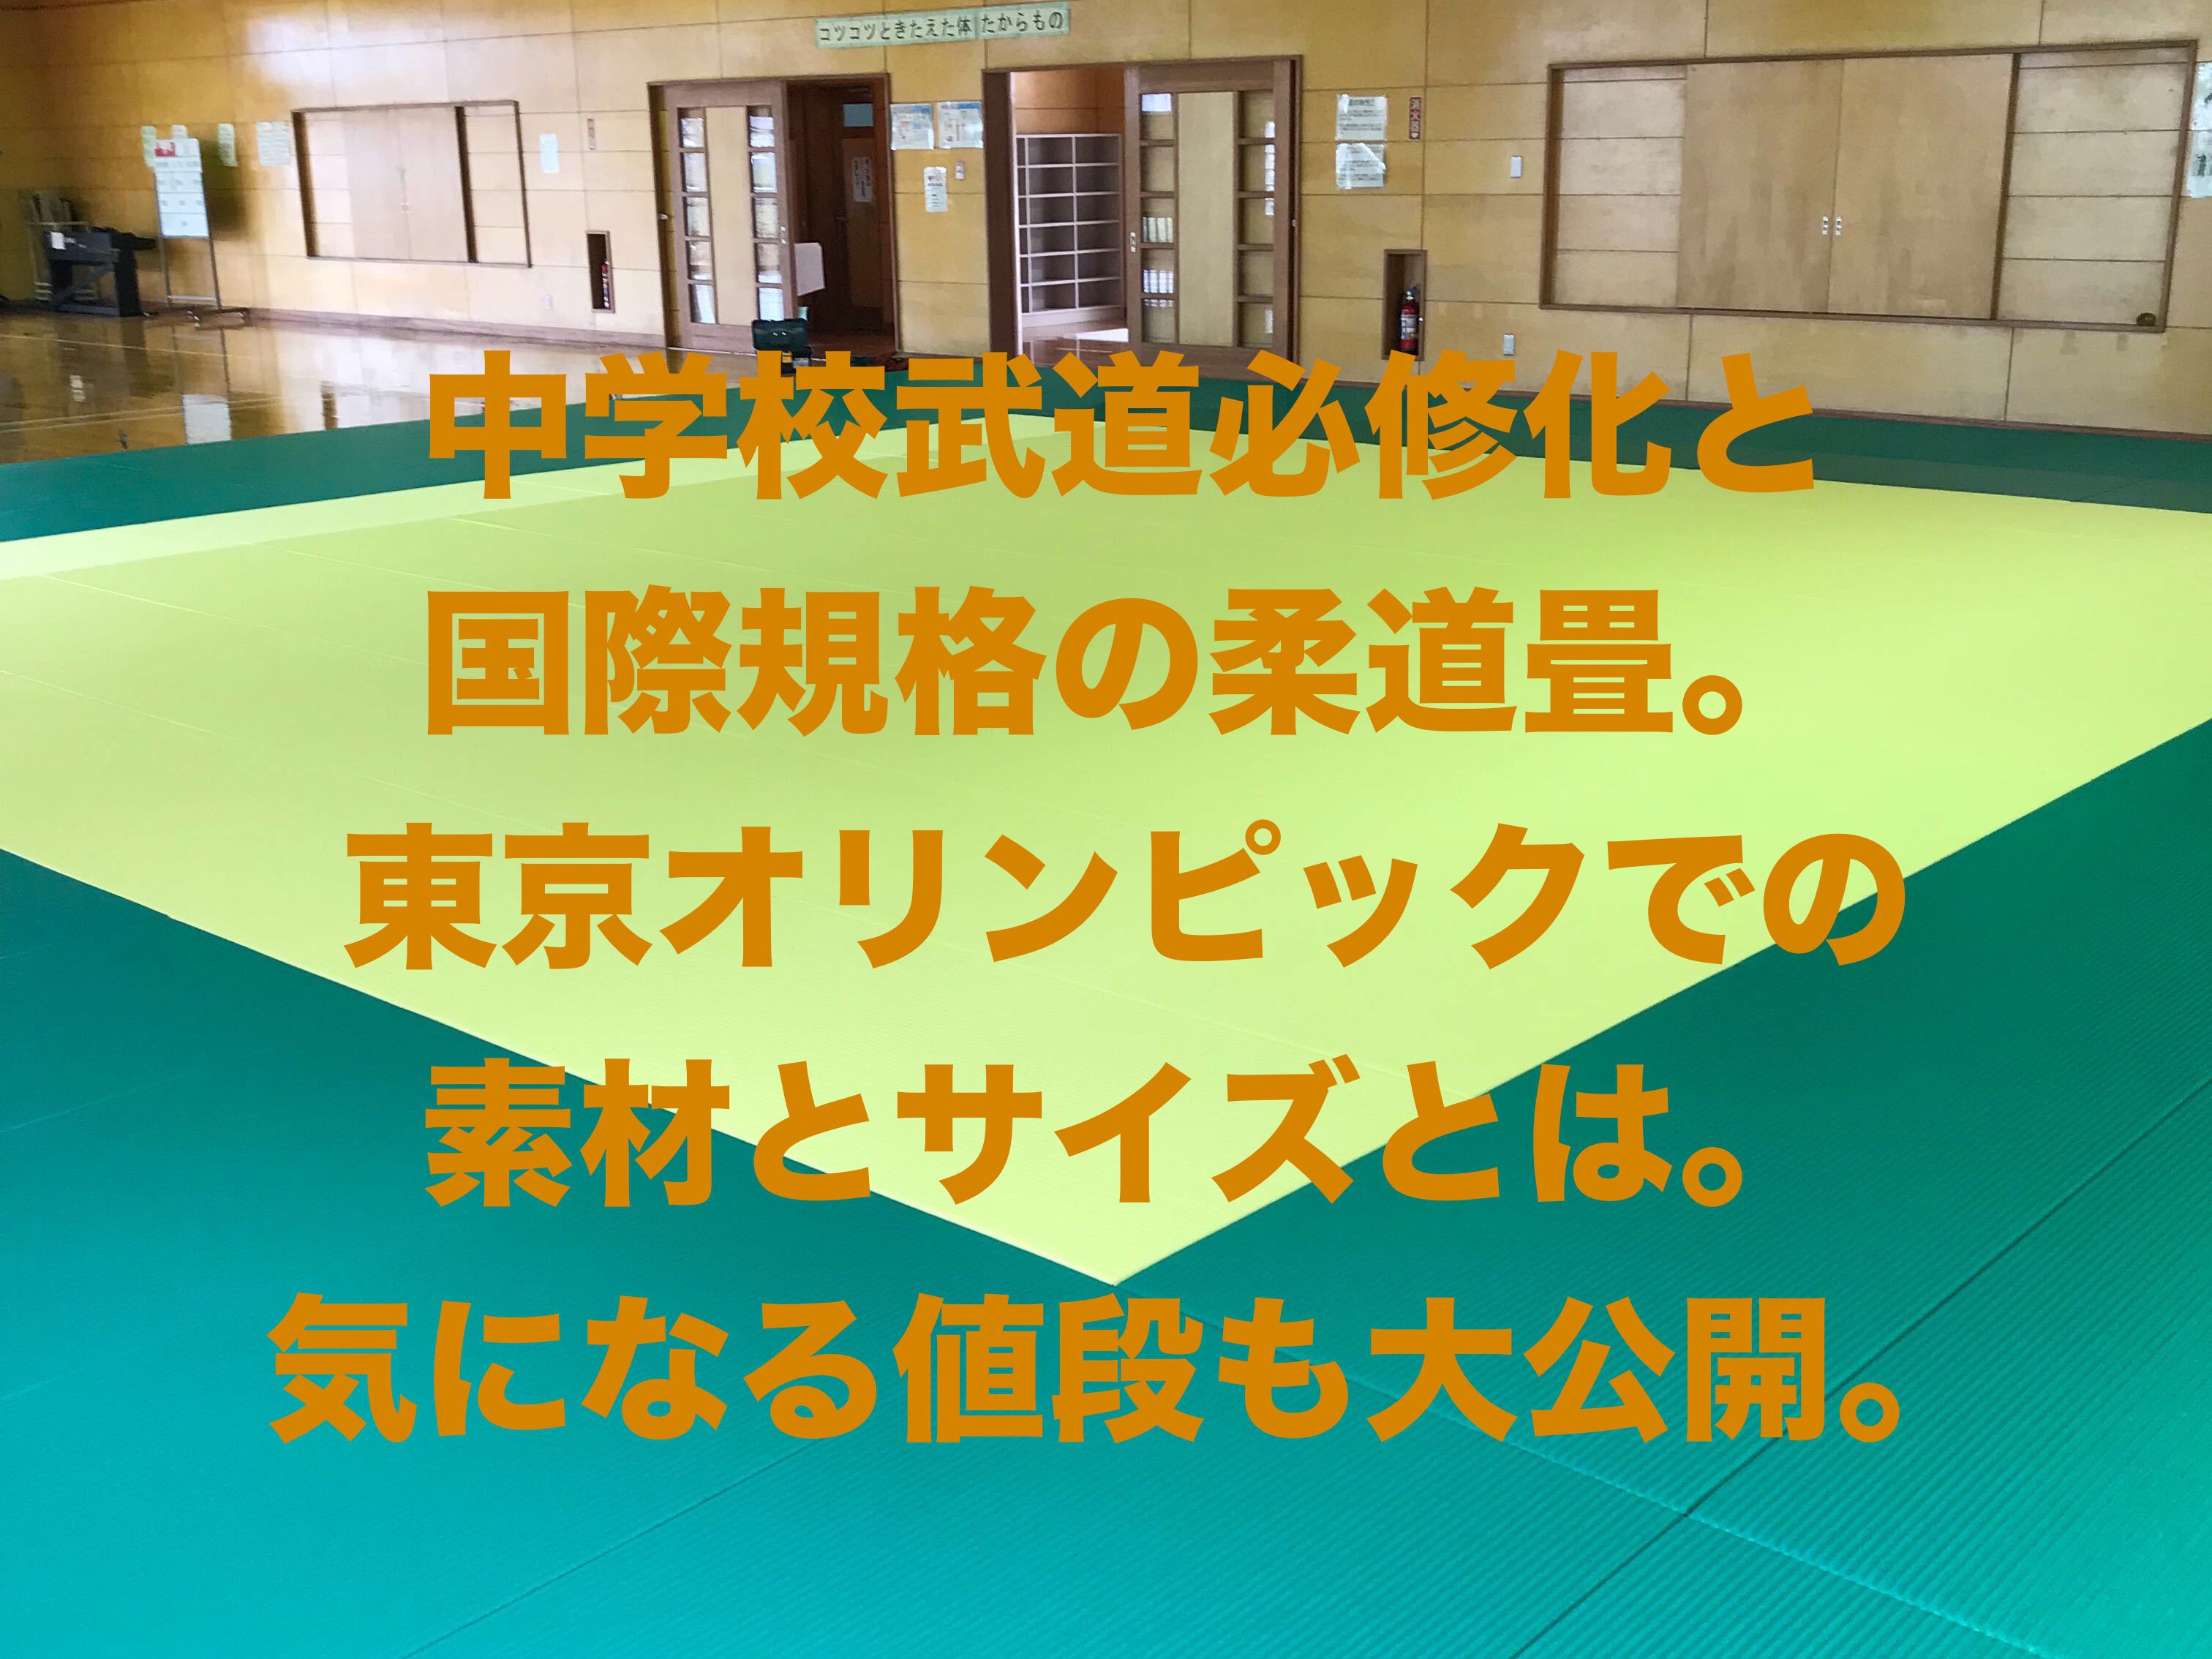 中学校武道必修化と国際規格の柔道畳。東京オリンピックでの素材と 